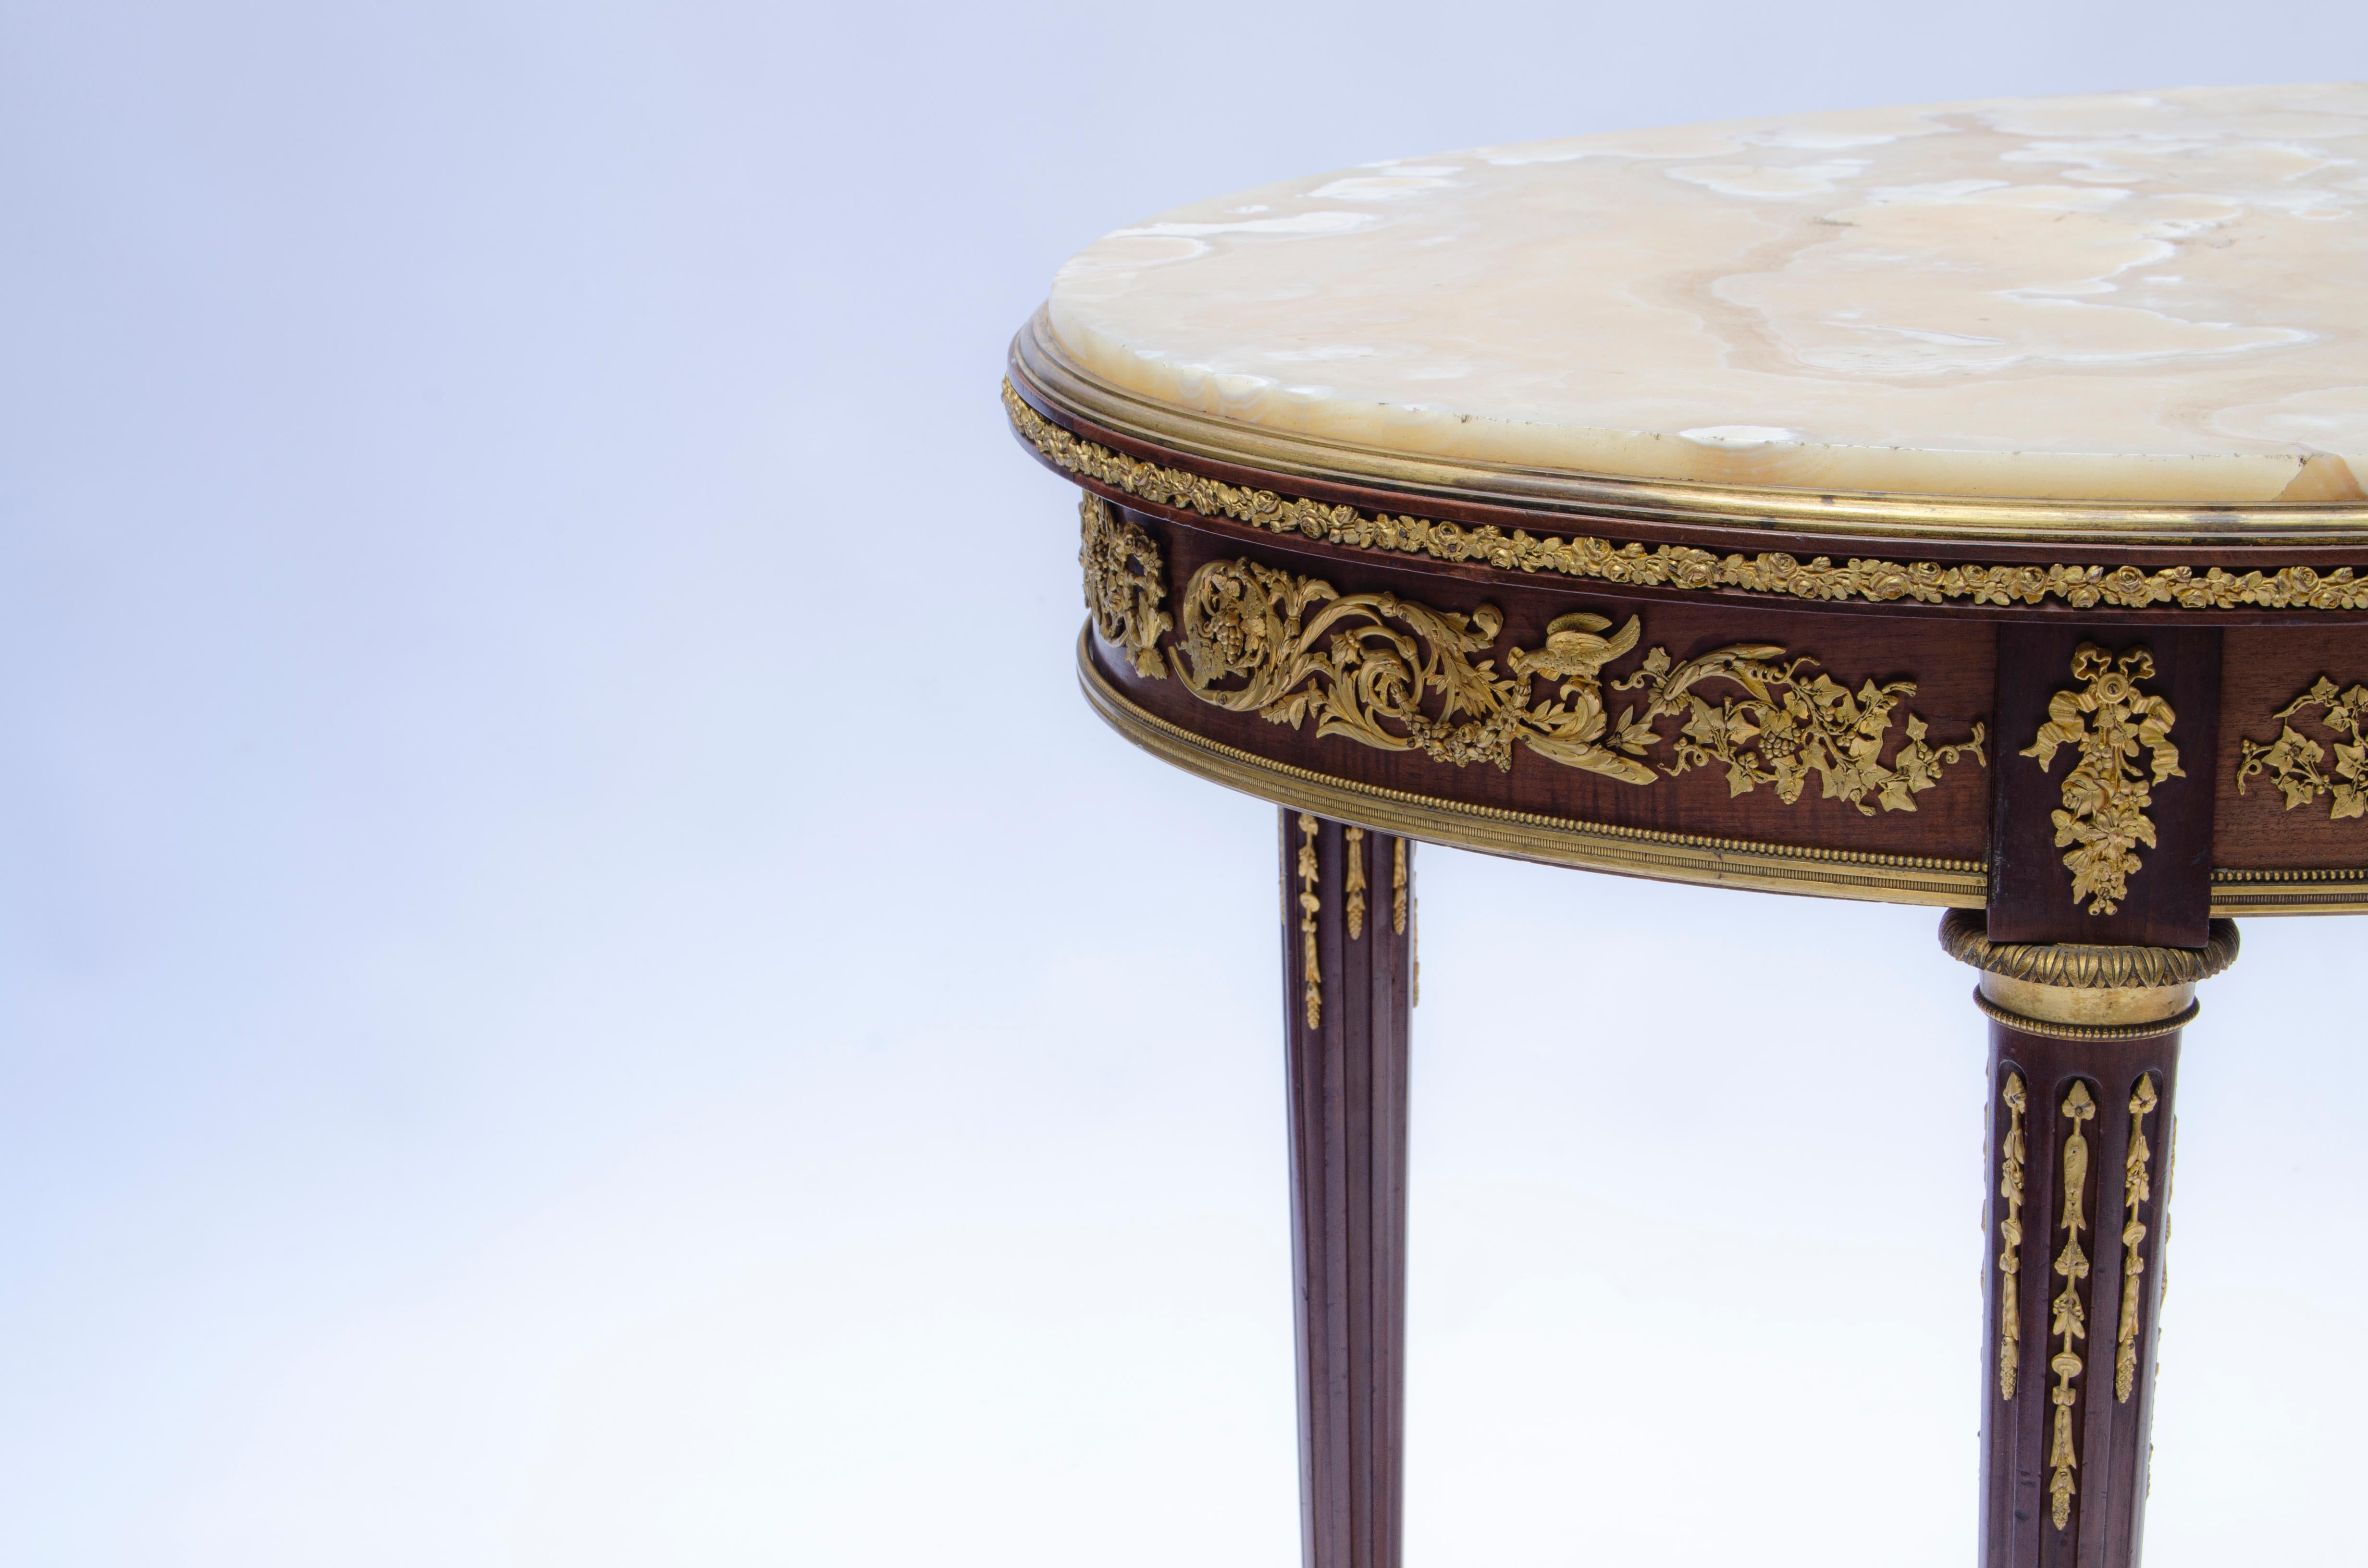 Table d'appoint ovale française, de style Louis XVI, en bois d'acajou et bronze doré (Ormolu), montée sur guéridon et plateau en marbre. Dans son design, on peut distinguer qu'il est entouré de guirlandes de bronze dans sa partie supérieure. Sur ses